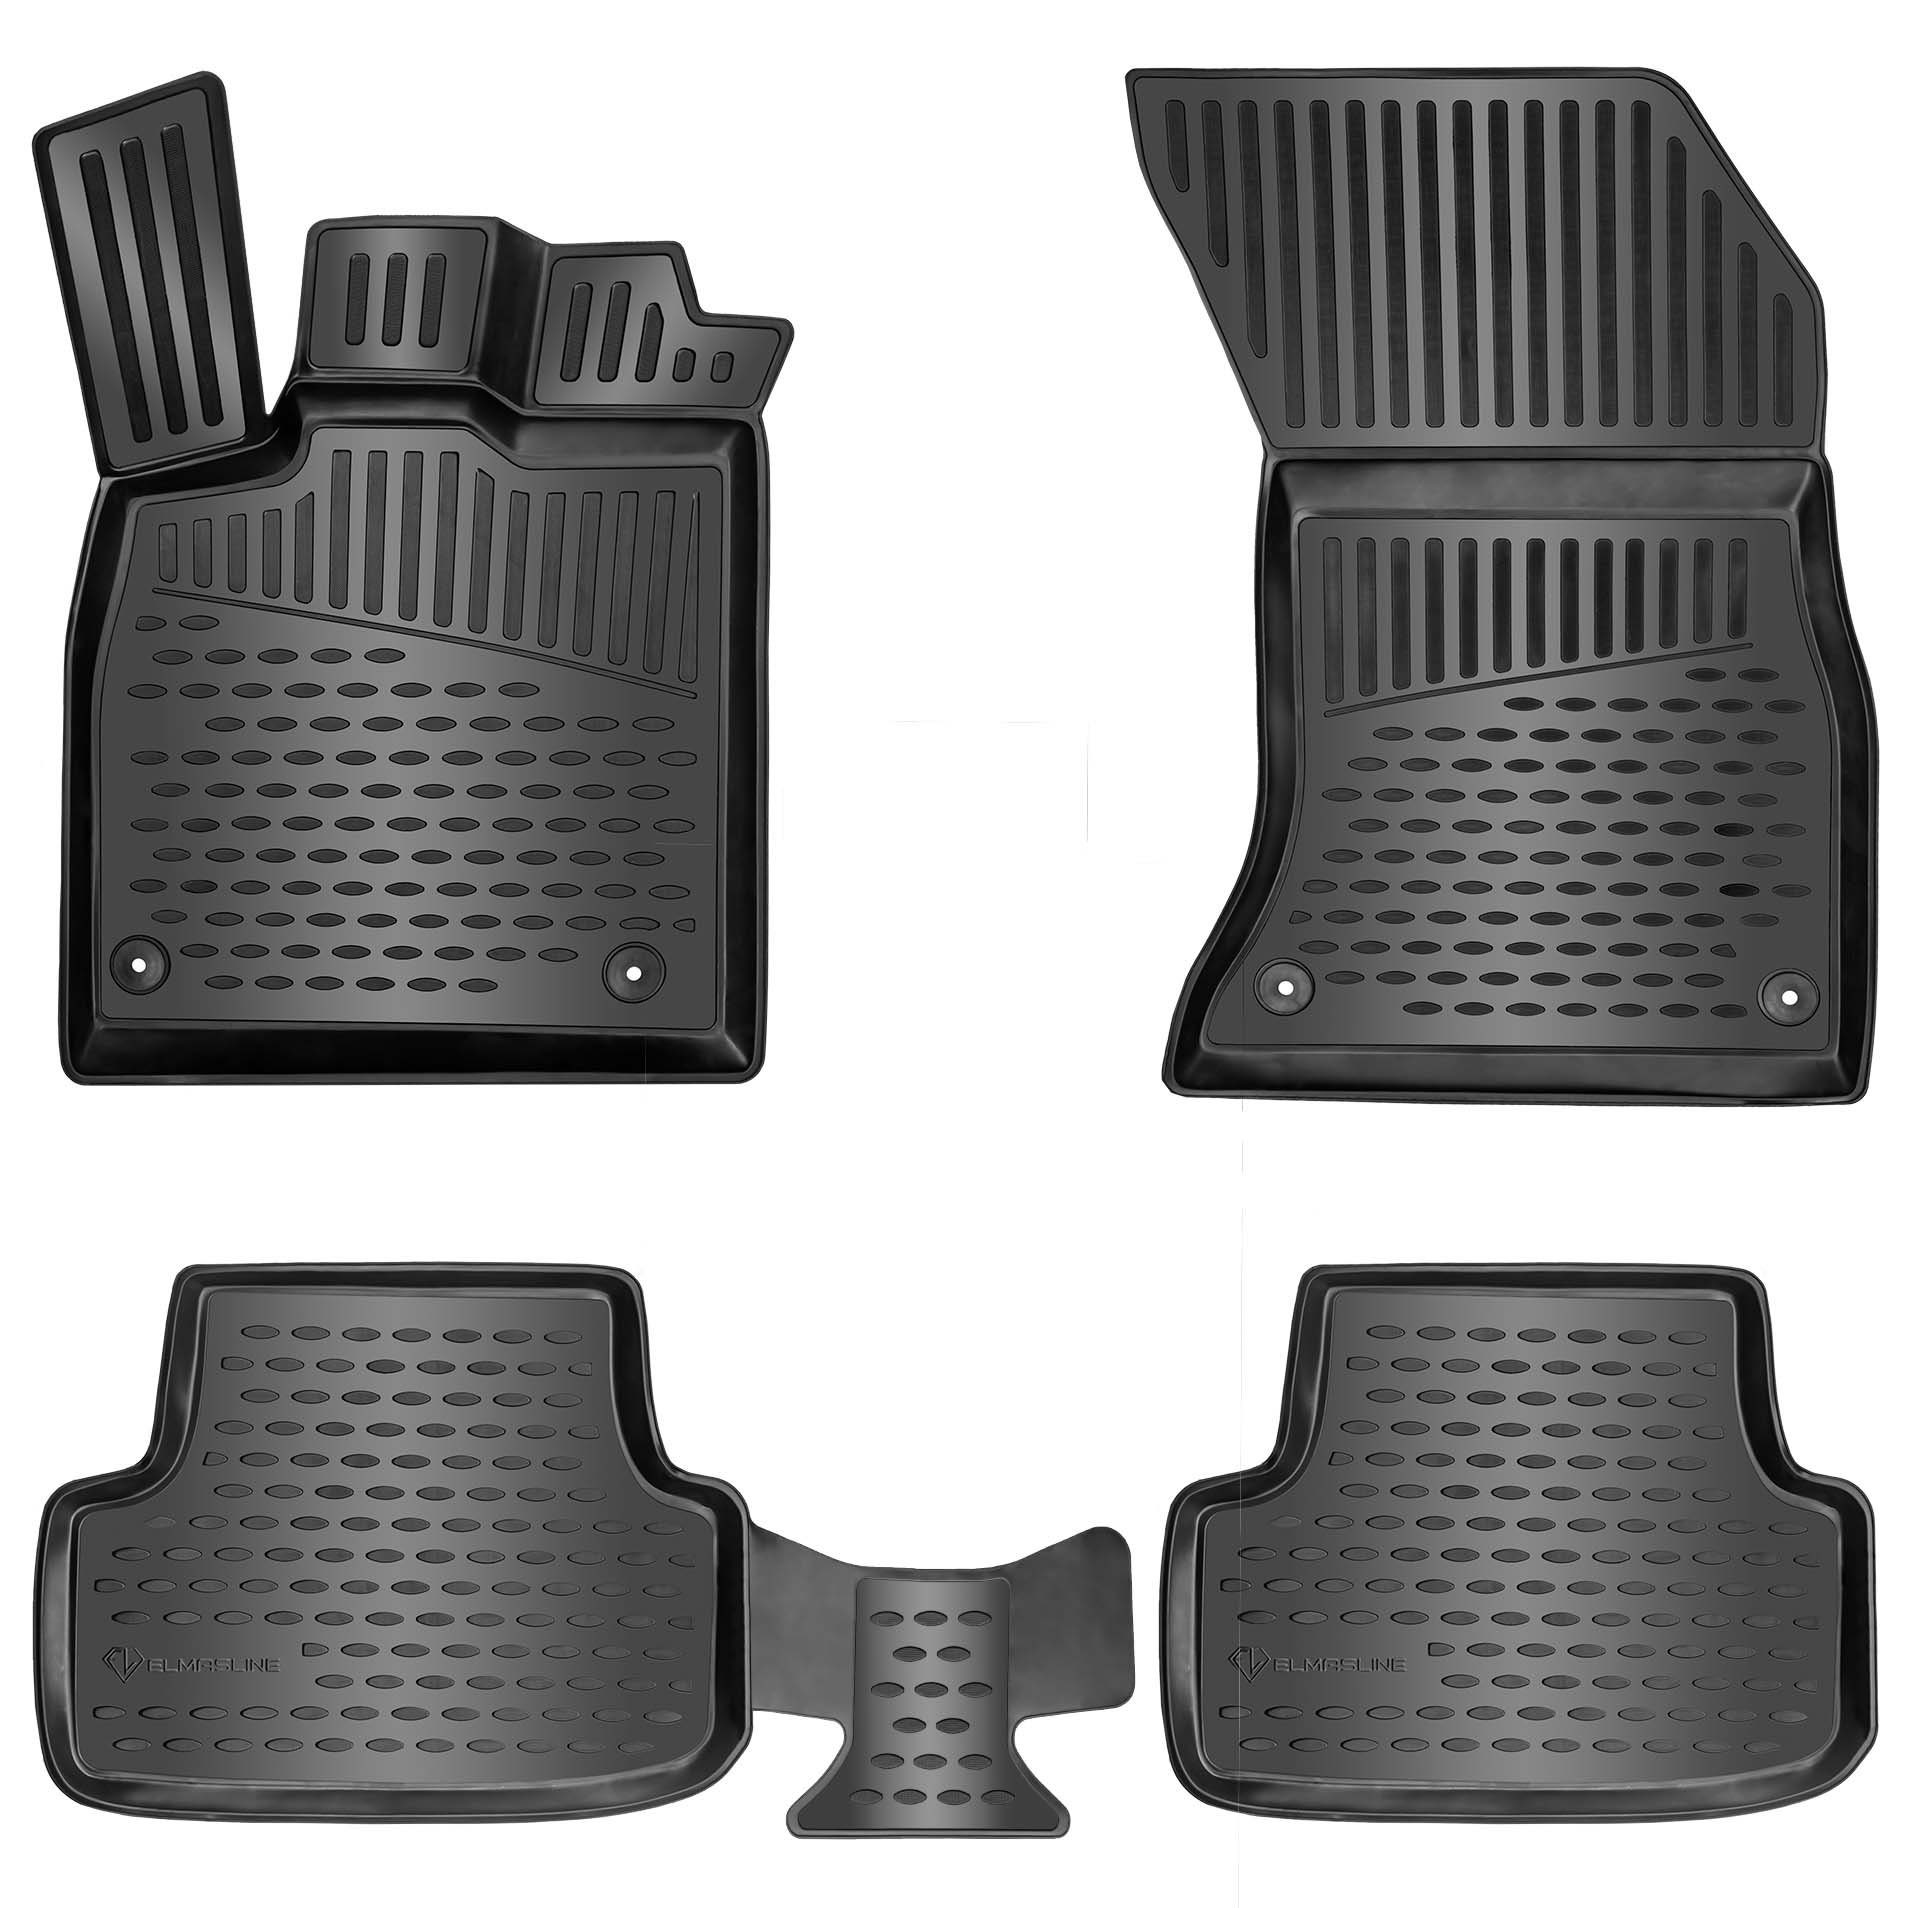 ELMASLINE Auto-Fußmatten Gummi (4 St), für RENAULT CLIO 3 (2005-2013) III. Generation - 3D Gummimatten mit extra hohem Rand für mehr Schutz - Passend für Baujahre:, 2005 - 2013